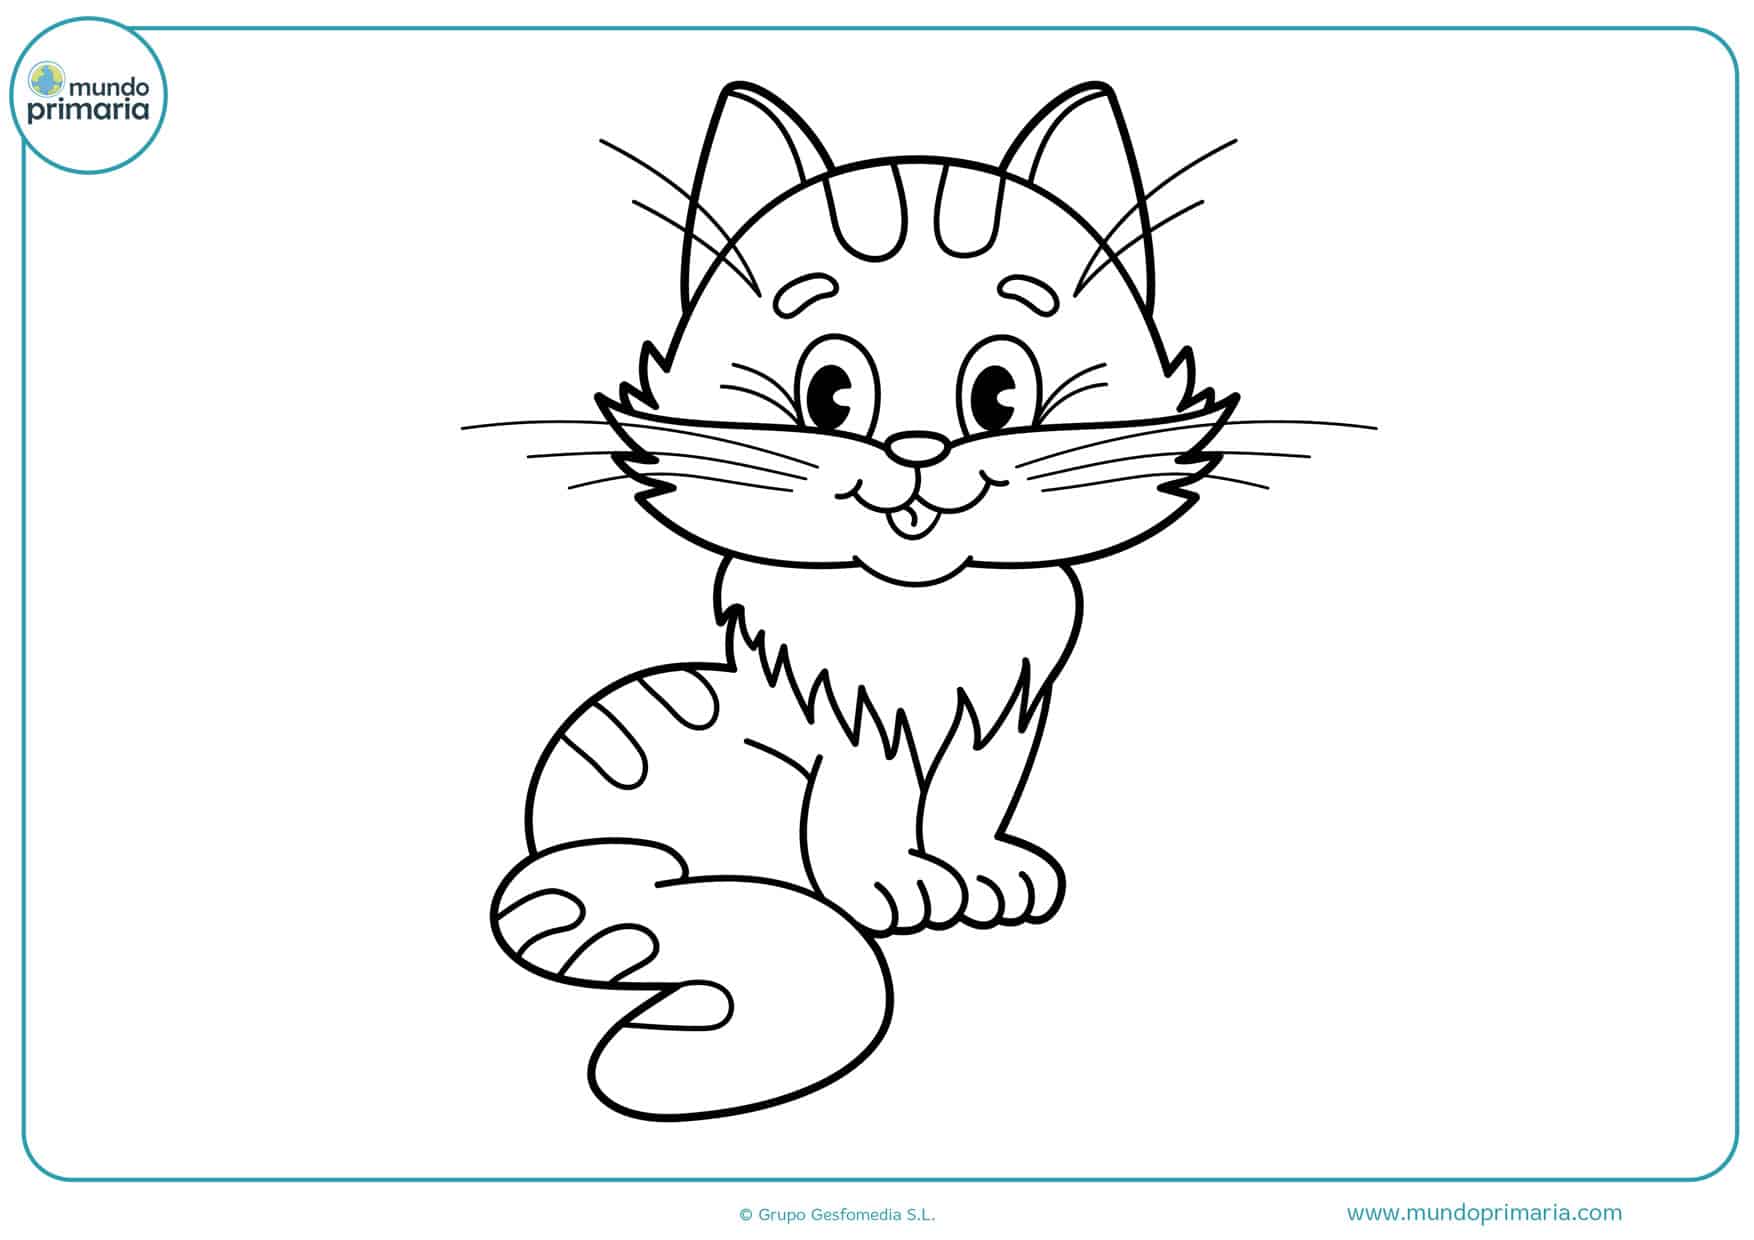 Etapa Hollywood multa Dibujos de gatos para imprimir y colorear - Mundo Primaria